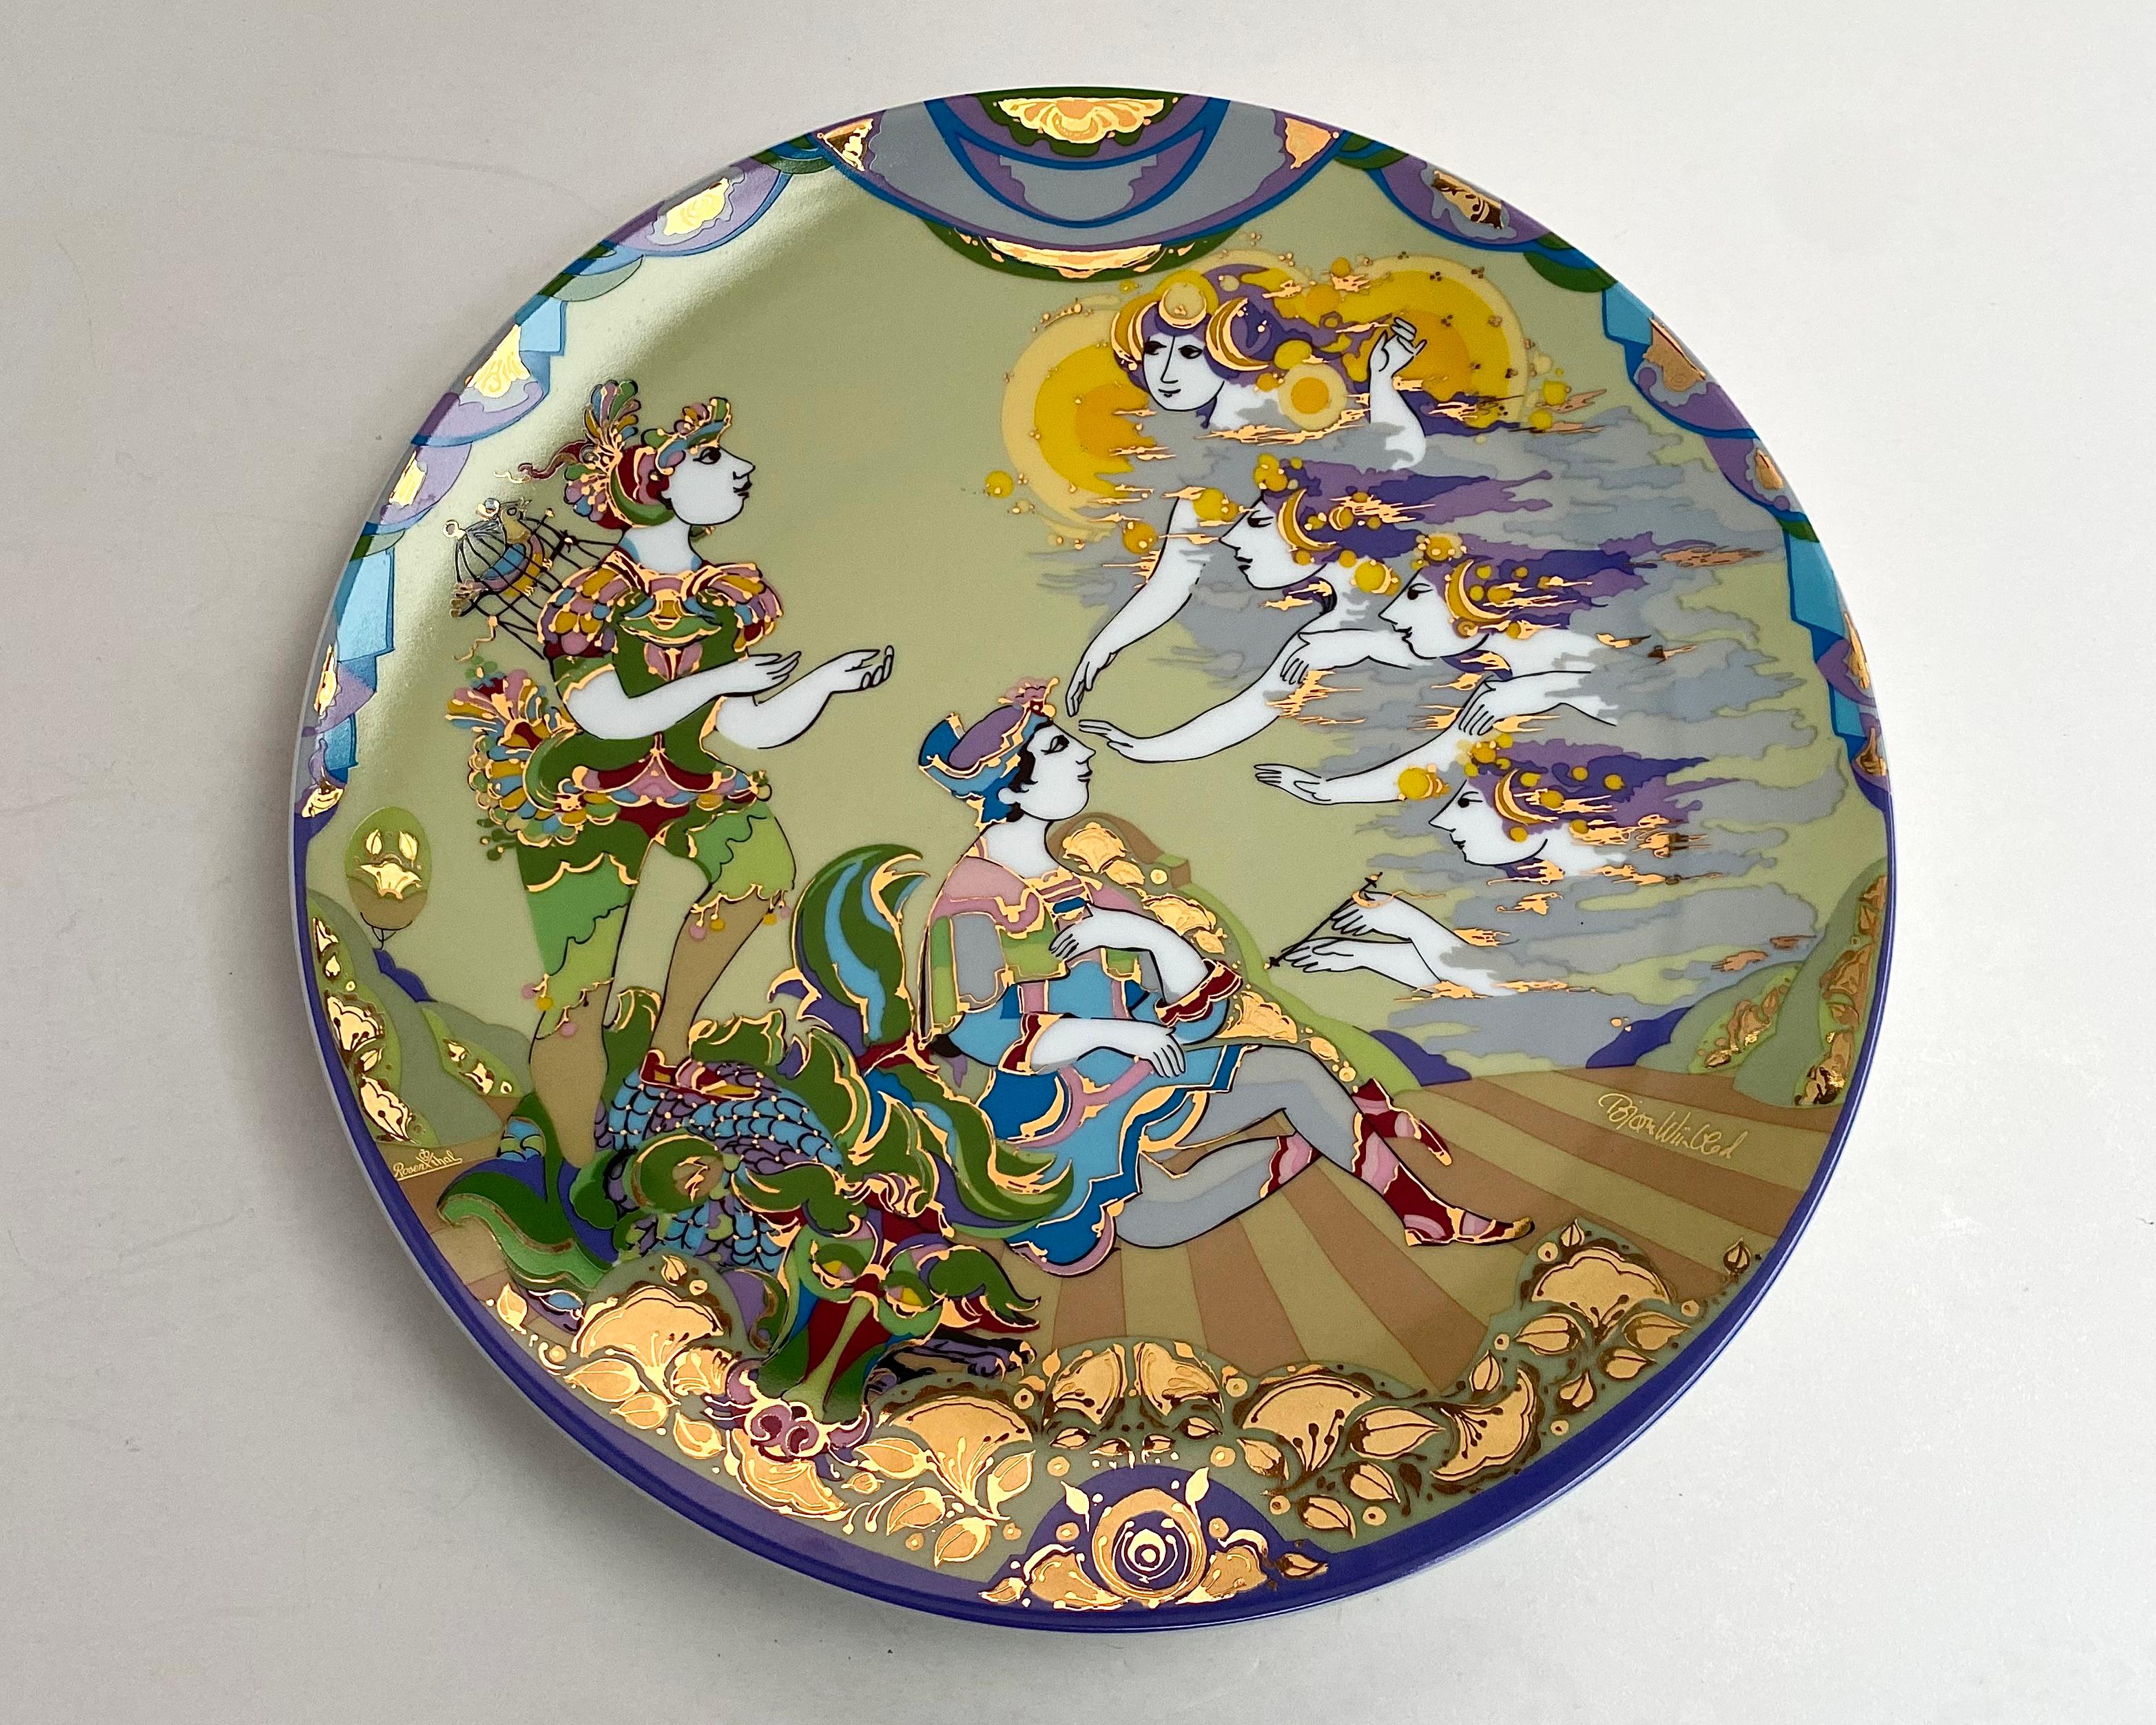 Cette étonnante assiette de collection de Rosenthal Studio Line présente un magnifique motif inspiré de 